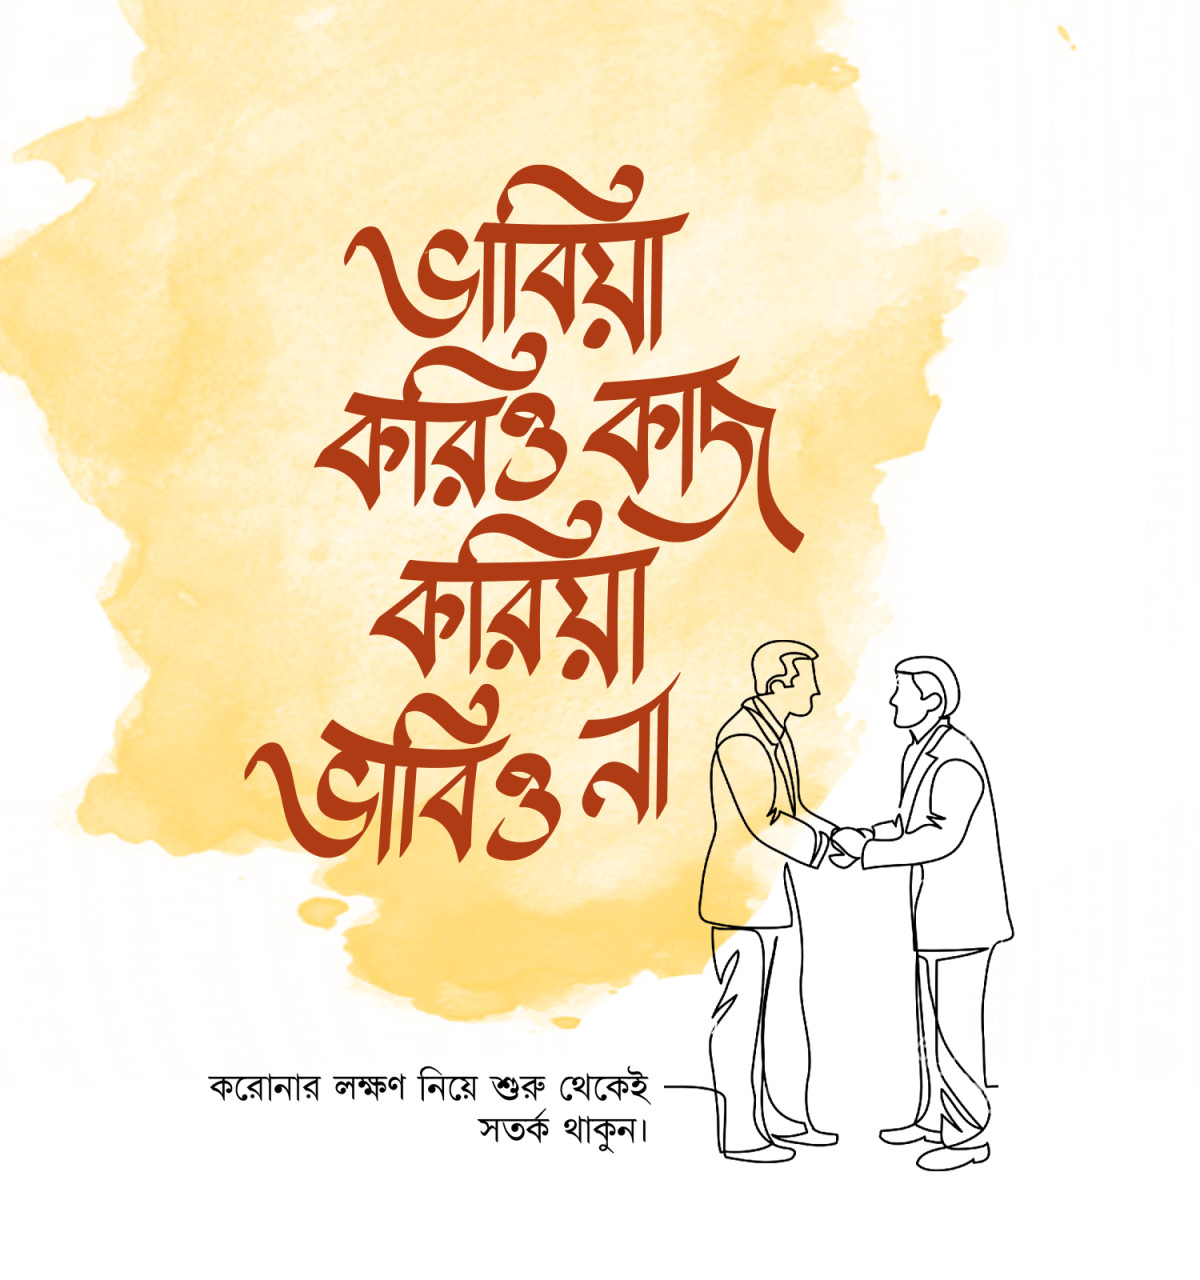 bengali proverbs